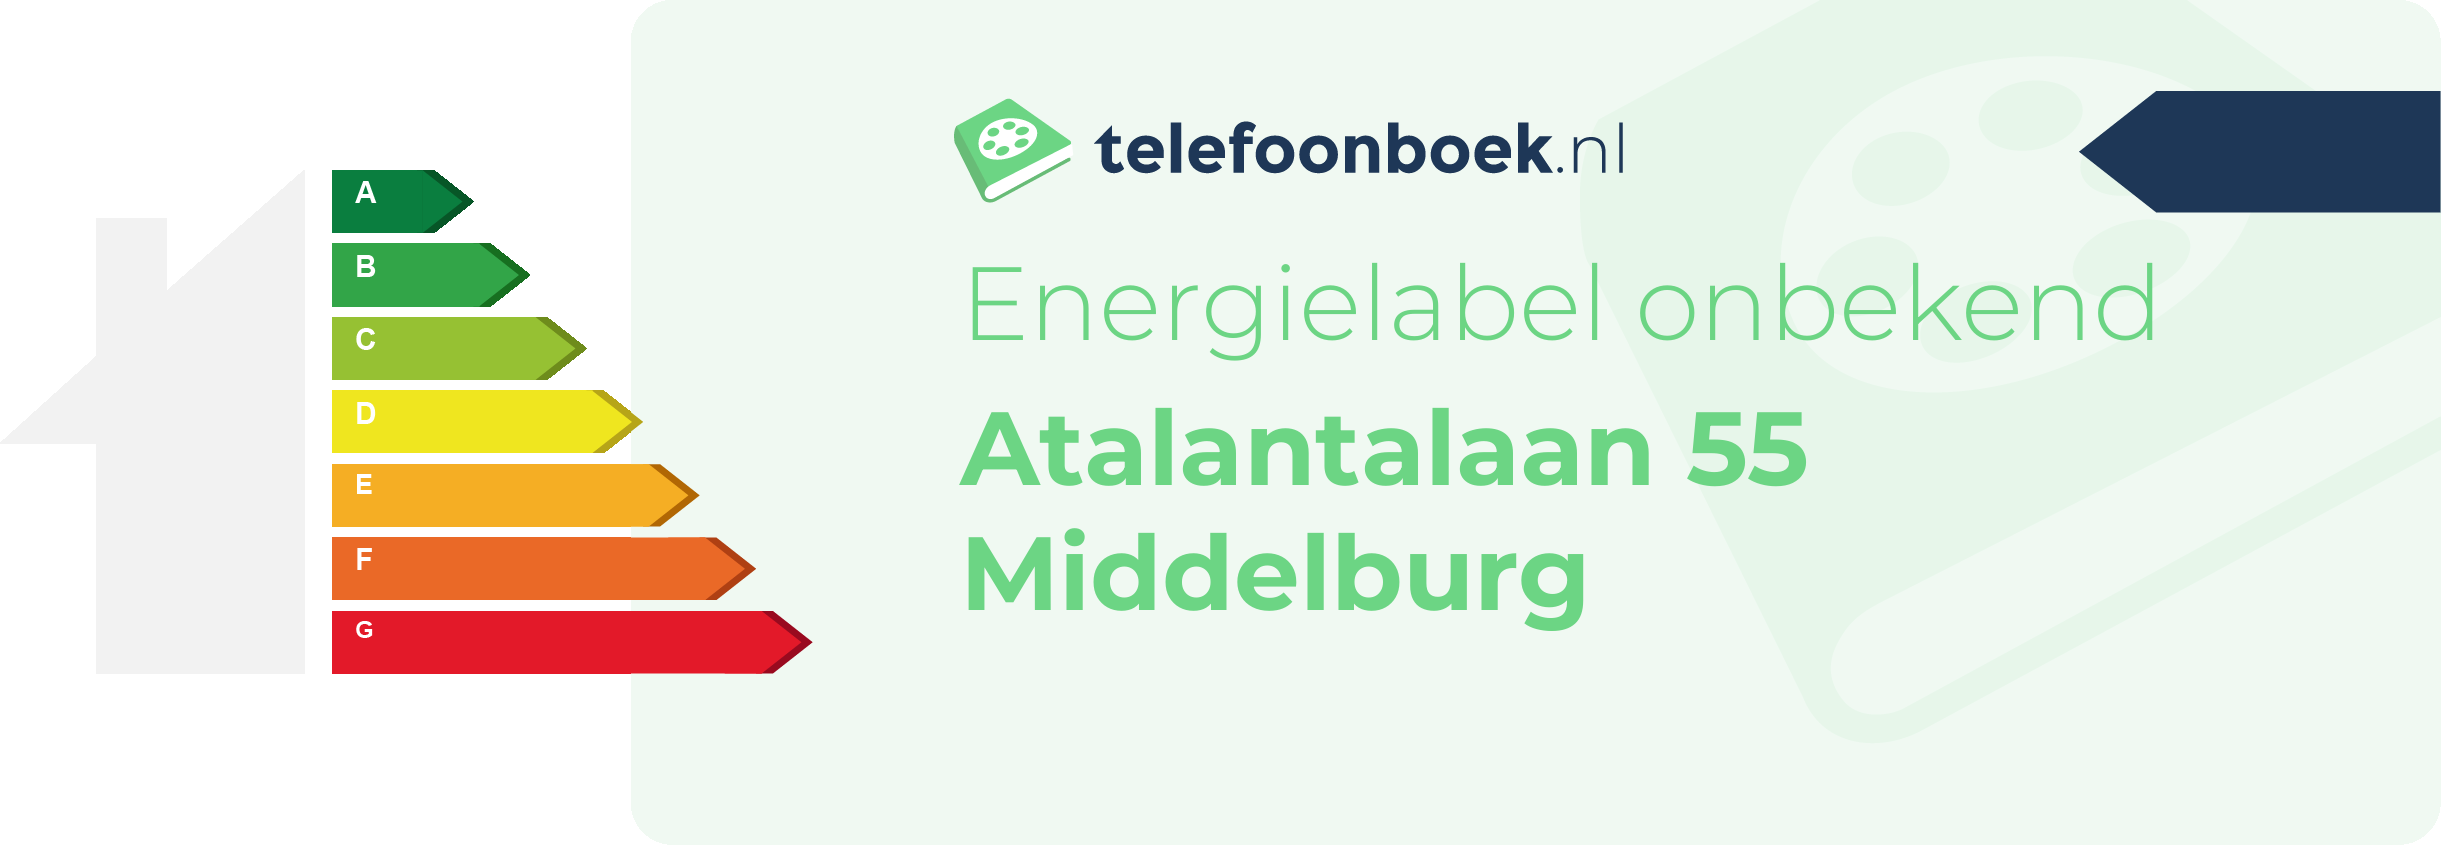 Energielabel Atalantalaan 55 Middelburg